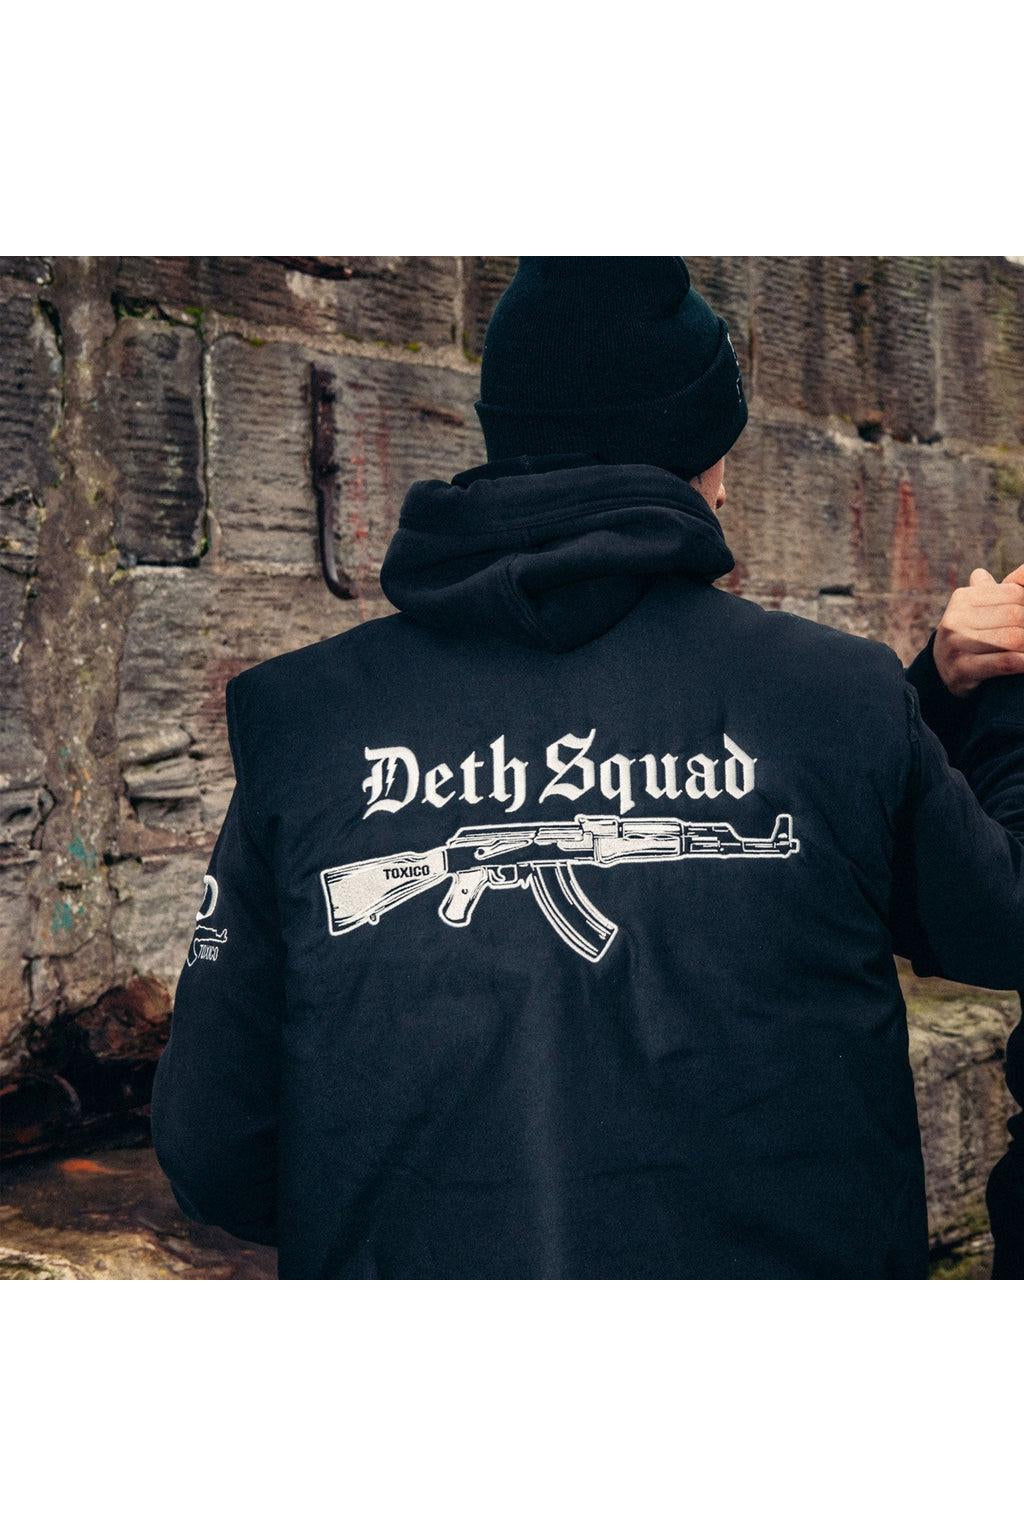 Deth Squad AK Padded Bodywarmer-Toxico-Dark Fashion Clothing